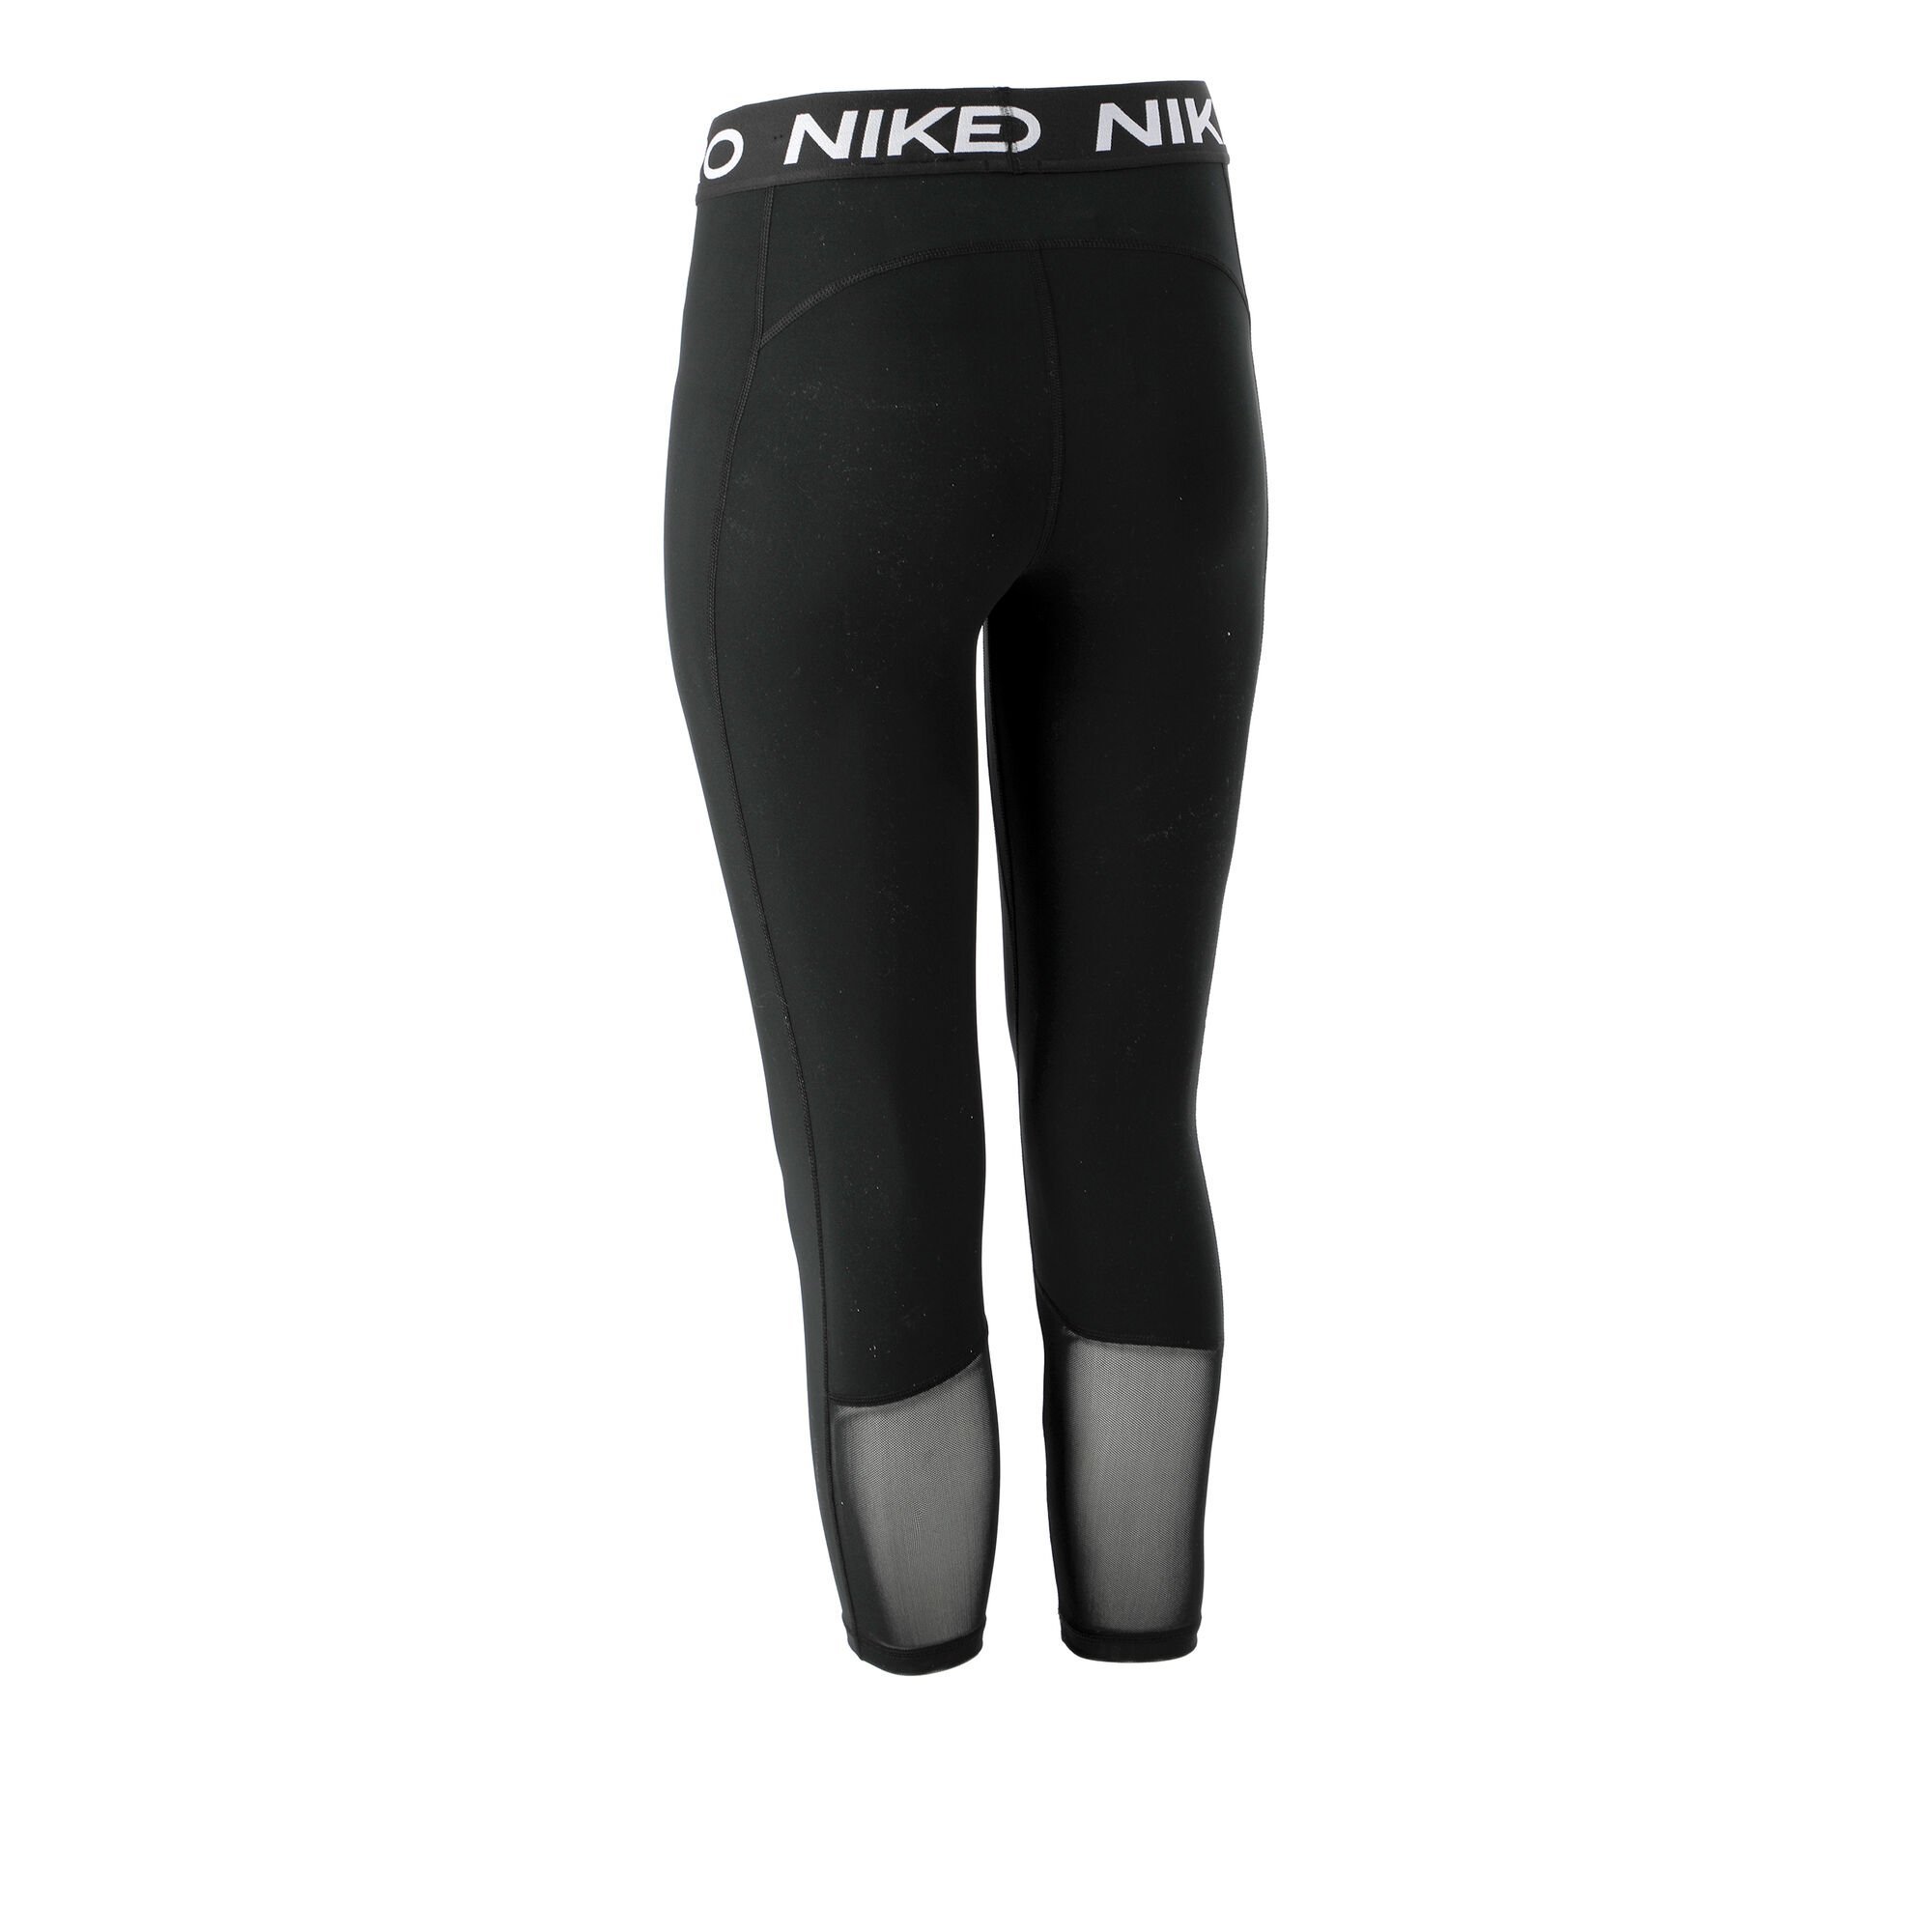 Nike Pro 365 3/4 Tight Damen - Schwarz, Weiß online kaufen | Running